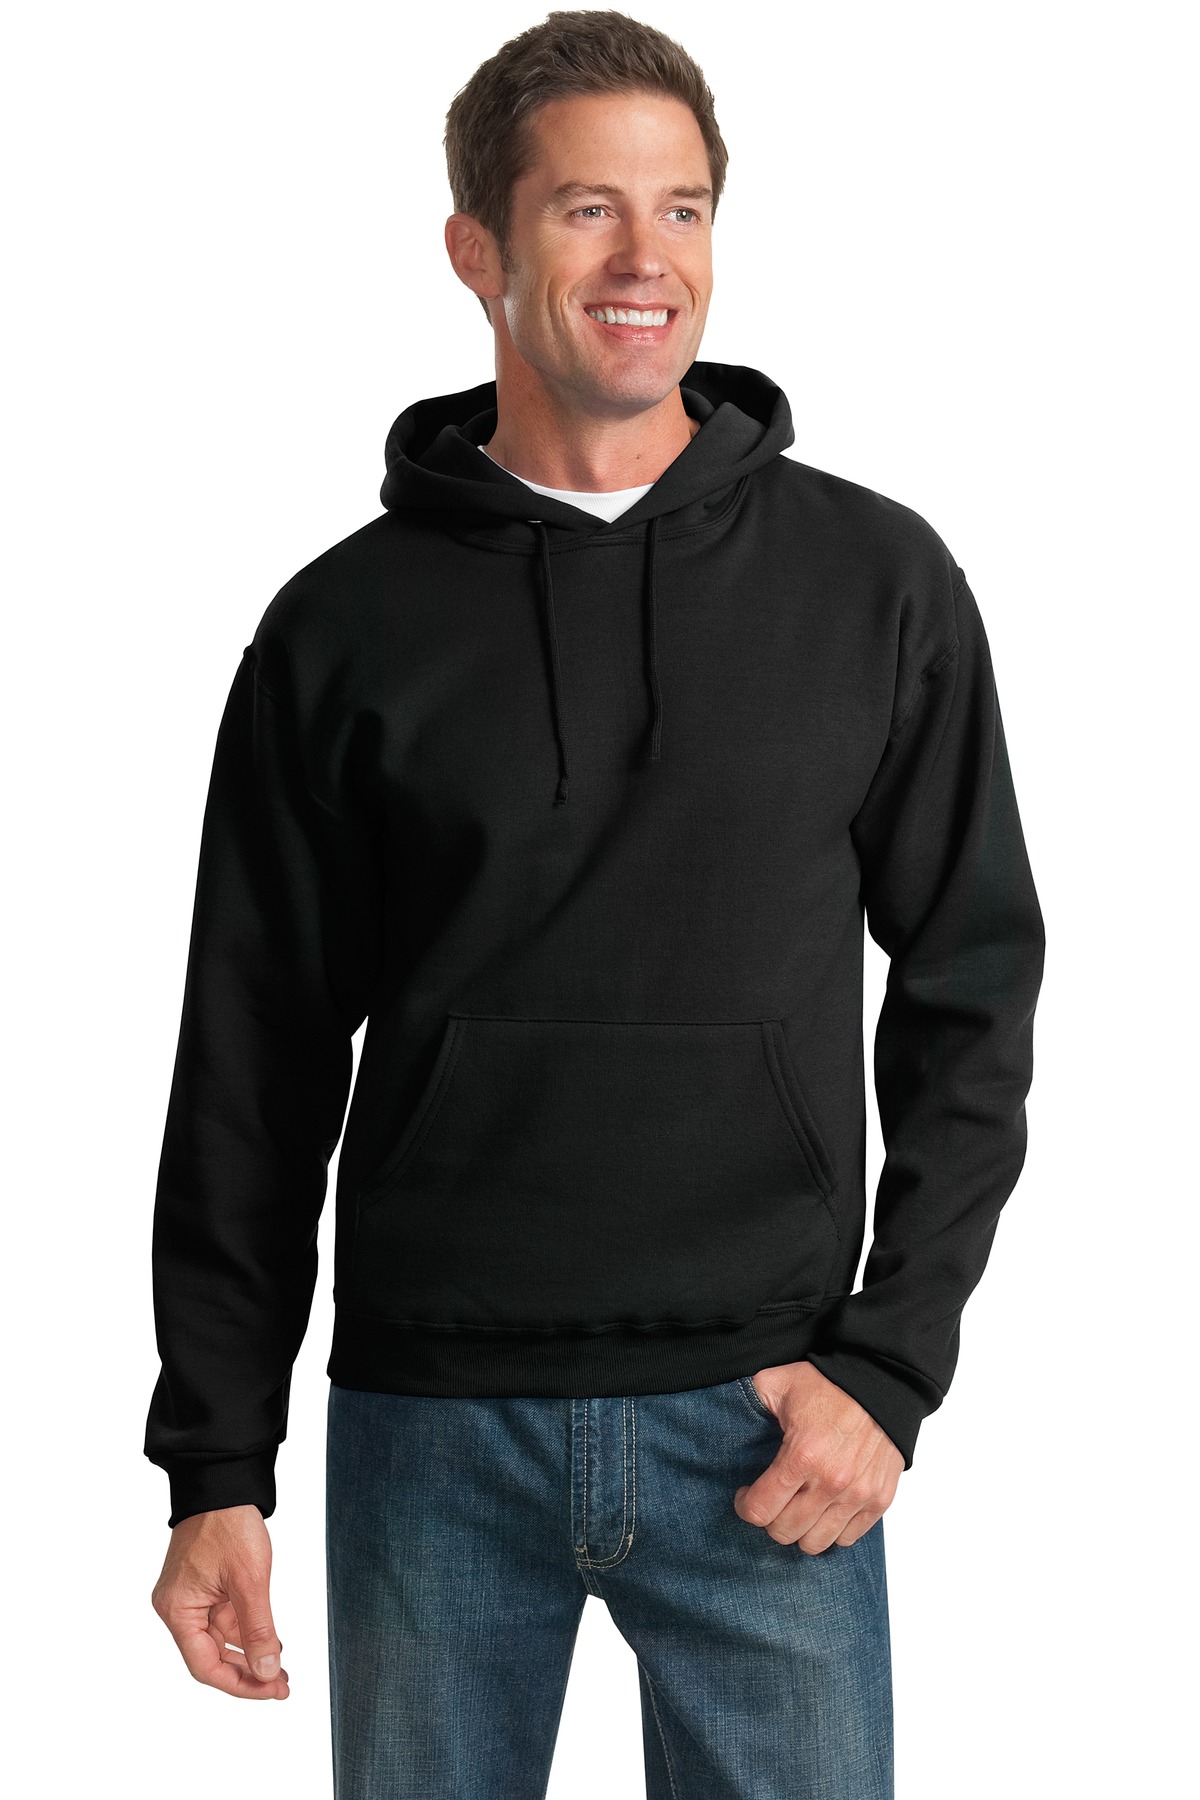 Jerzees® - NuBlend® Pullover Hooded Sweatshirt.-